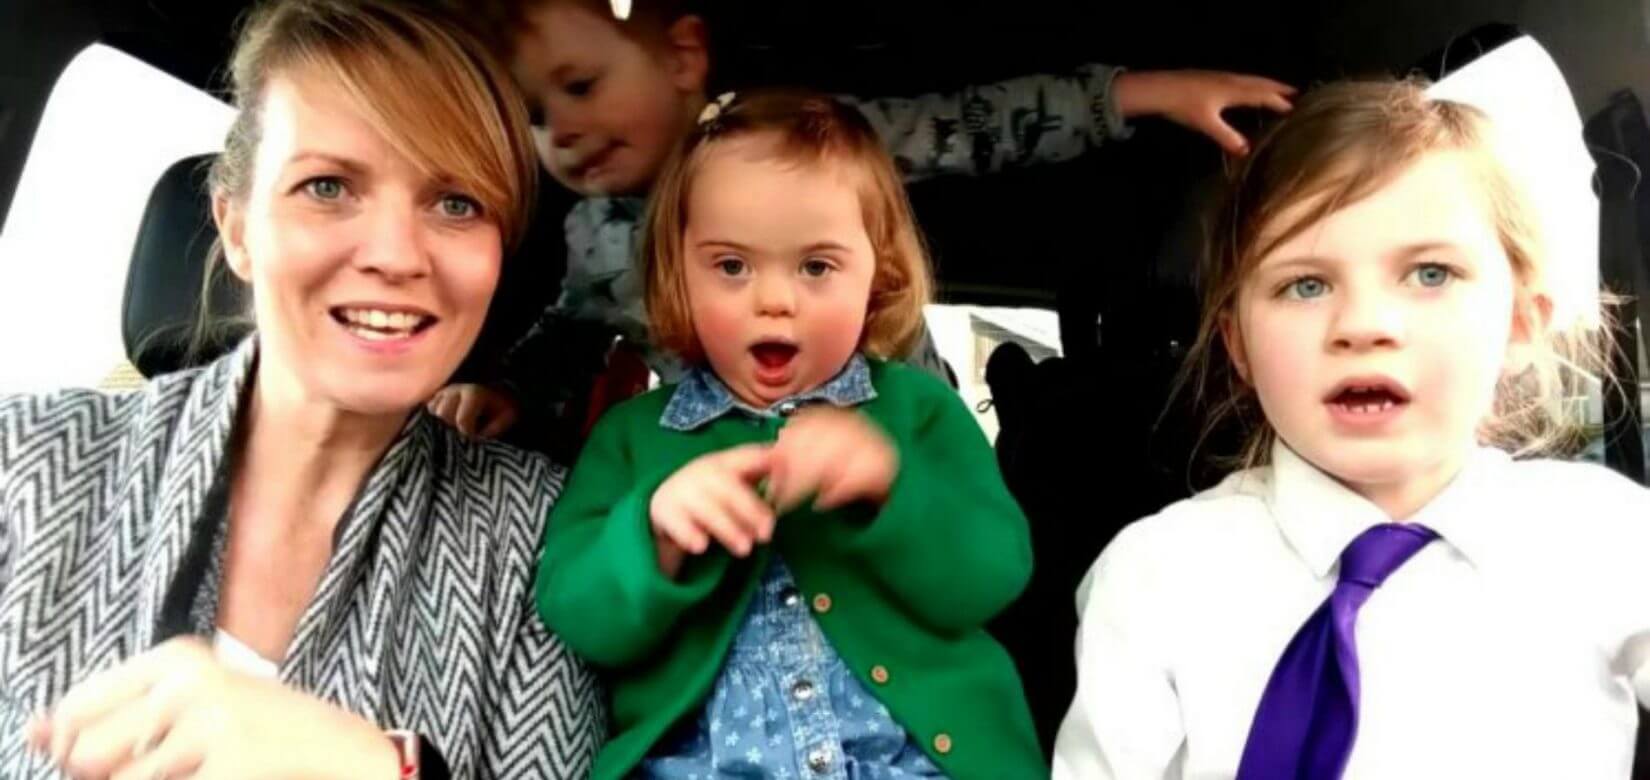 Παιδιά με Σύνδρομο Down και οι μαμάδες τους σε ένα Carpool Karaoke που συγκινεί (video)